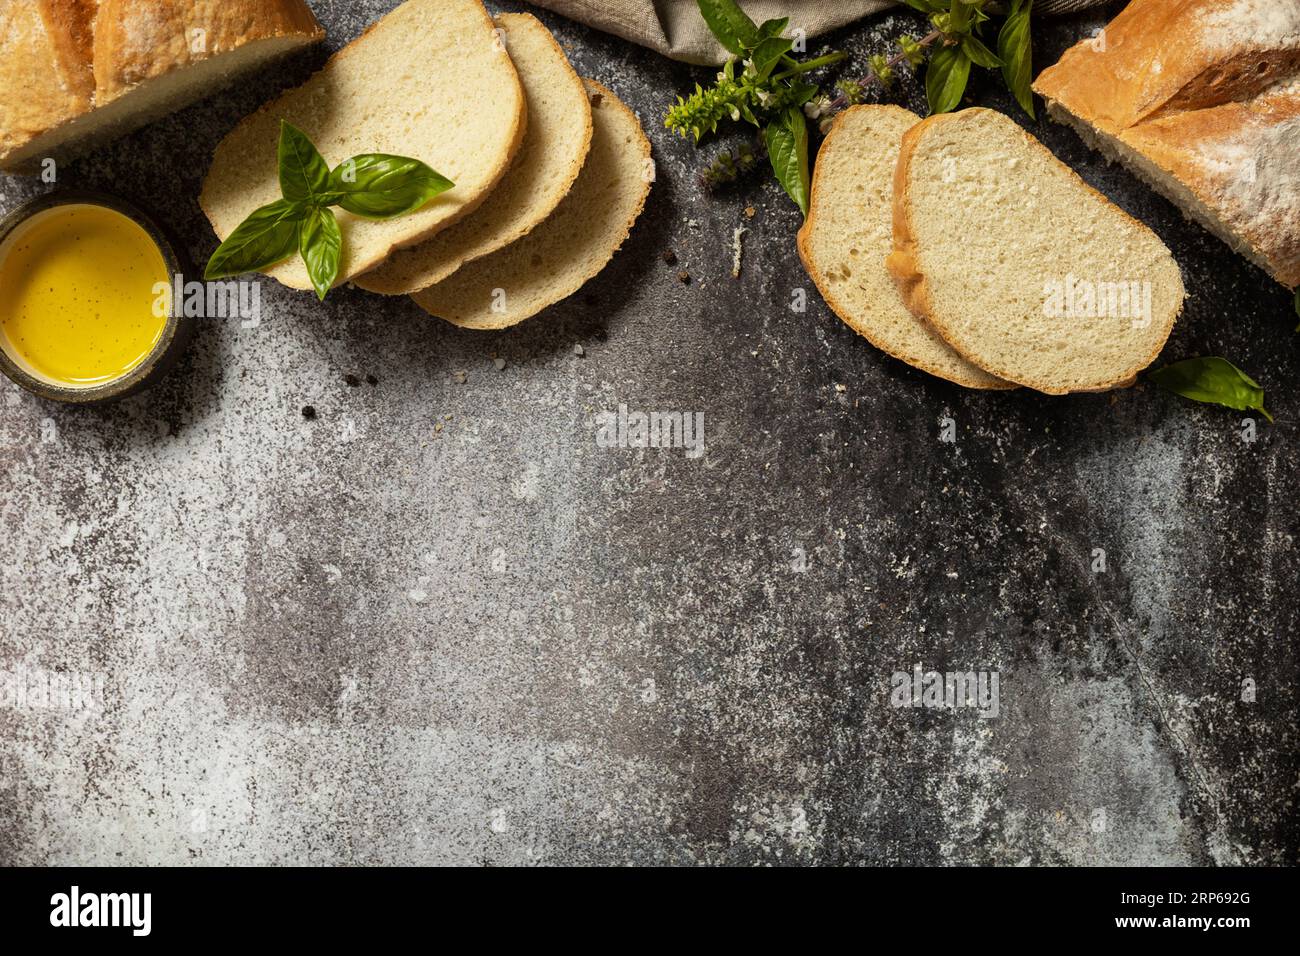 Geschnittenes italienisches Ciabatta-Brot mit extra nativem Olivenöl und Kraut auf dunklem Steinhintergrund. Frisches knuspriges Ciabatta-Brot. Ansicht von oben. Spac kopieren Stockfoto